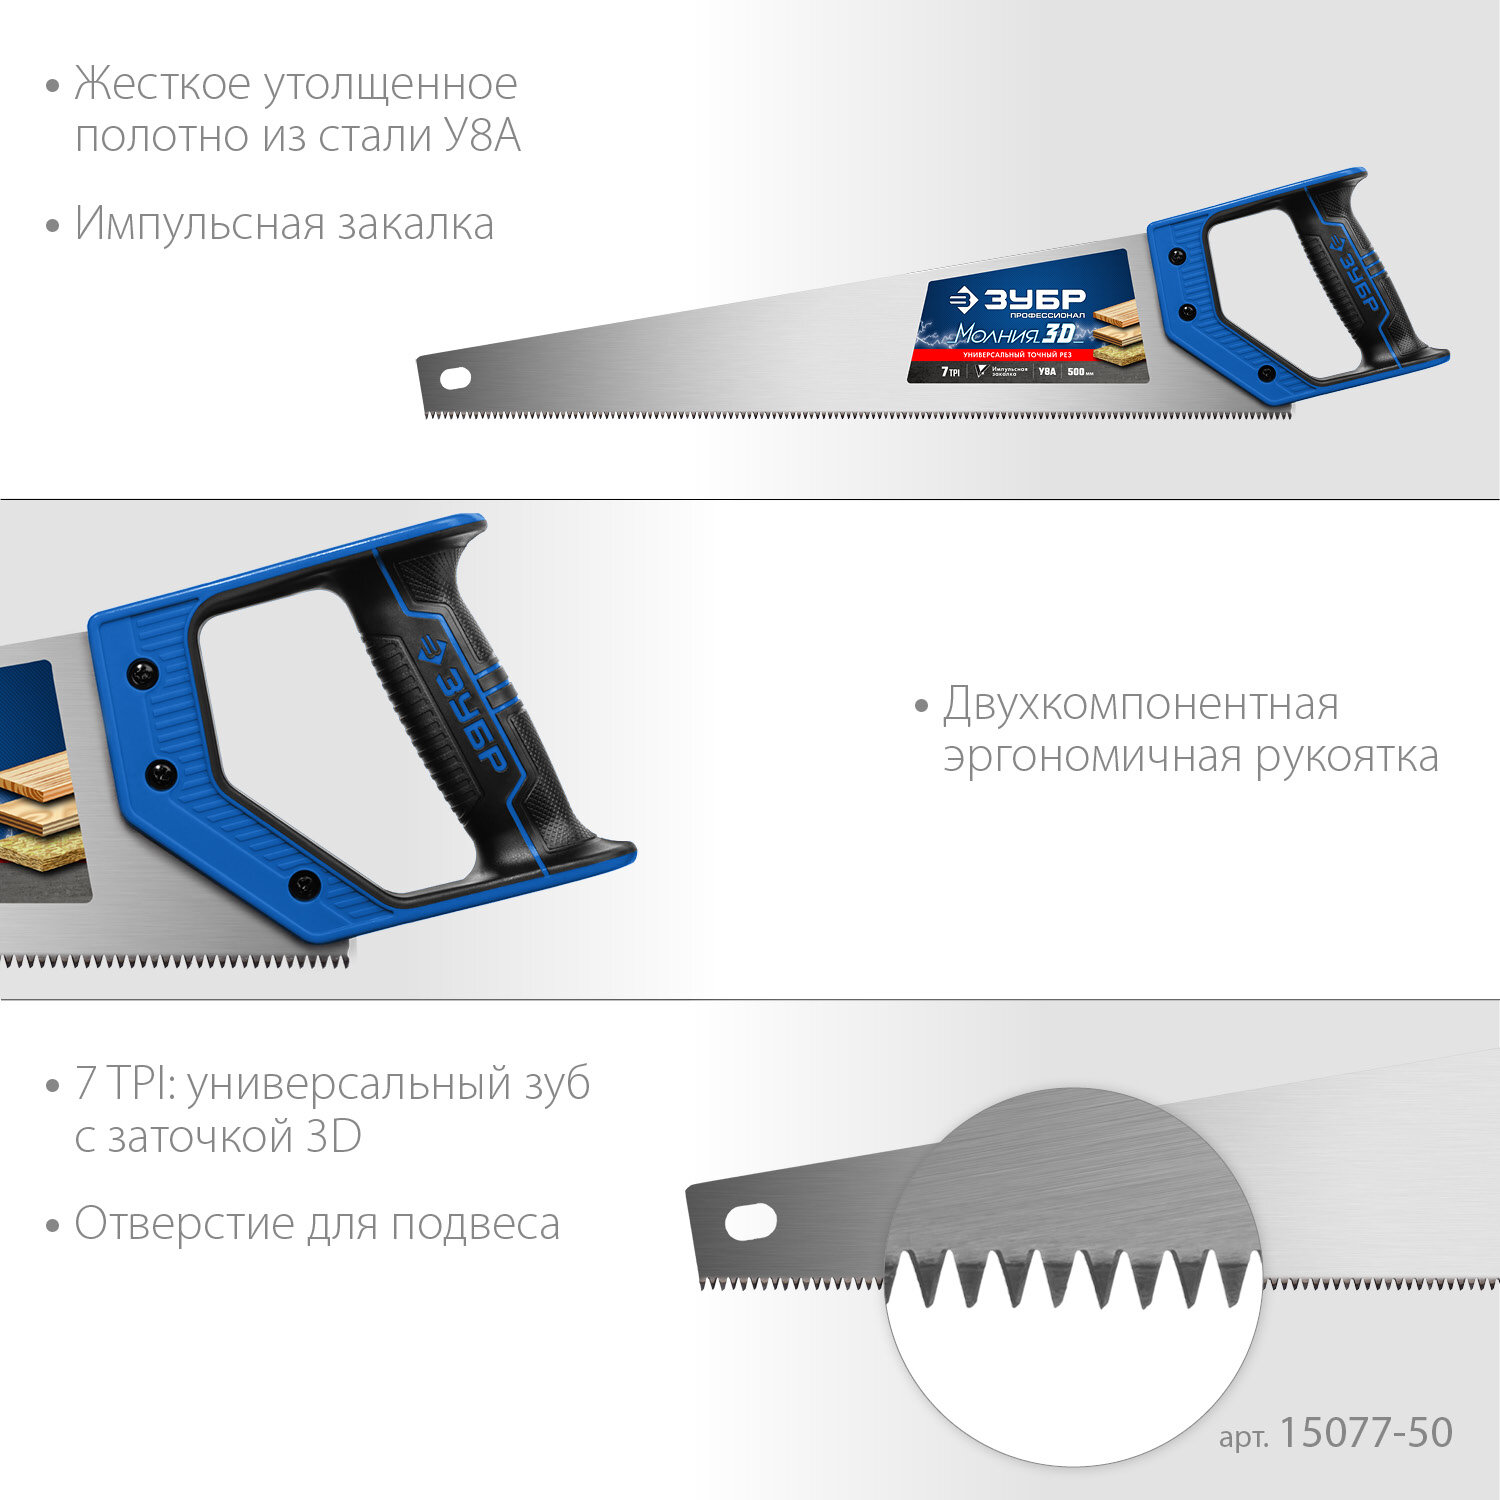 ЗУБР Молния-3D 500 мм, 7TPI, Универсальная ножовка (15077-50)